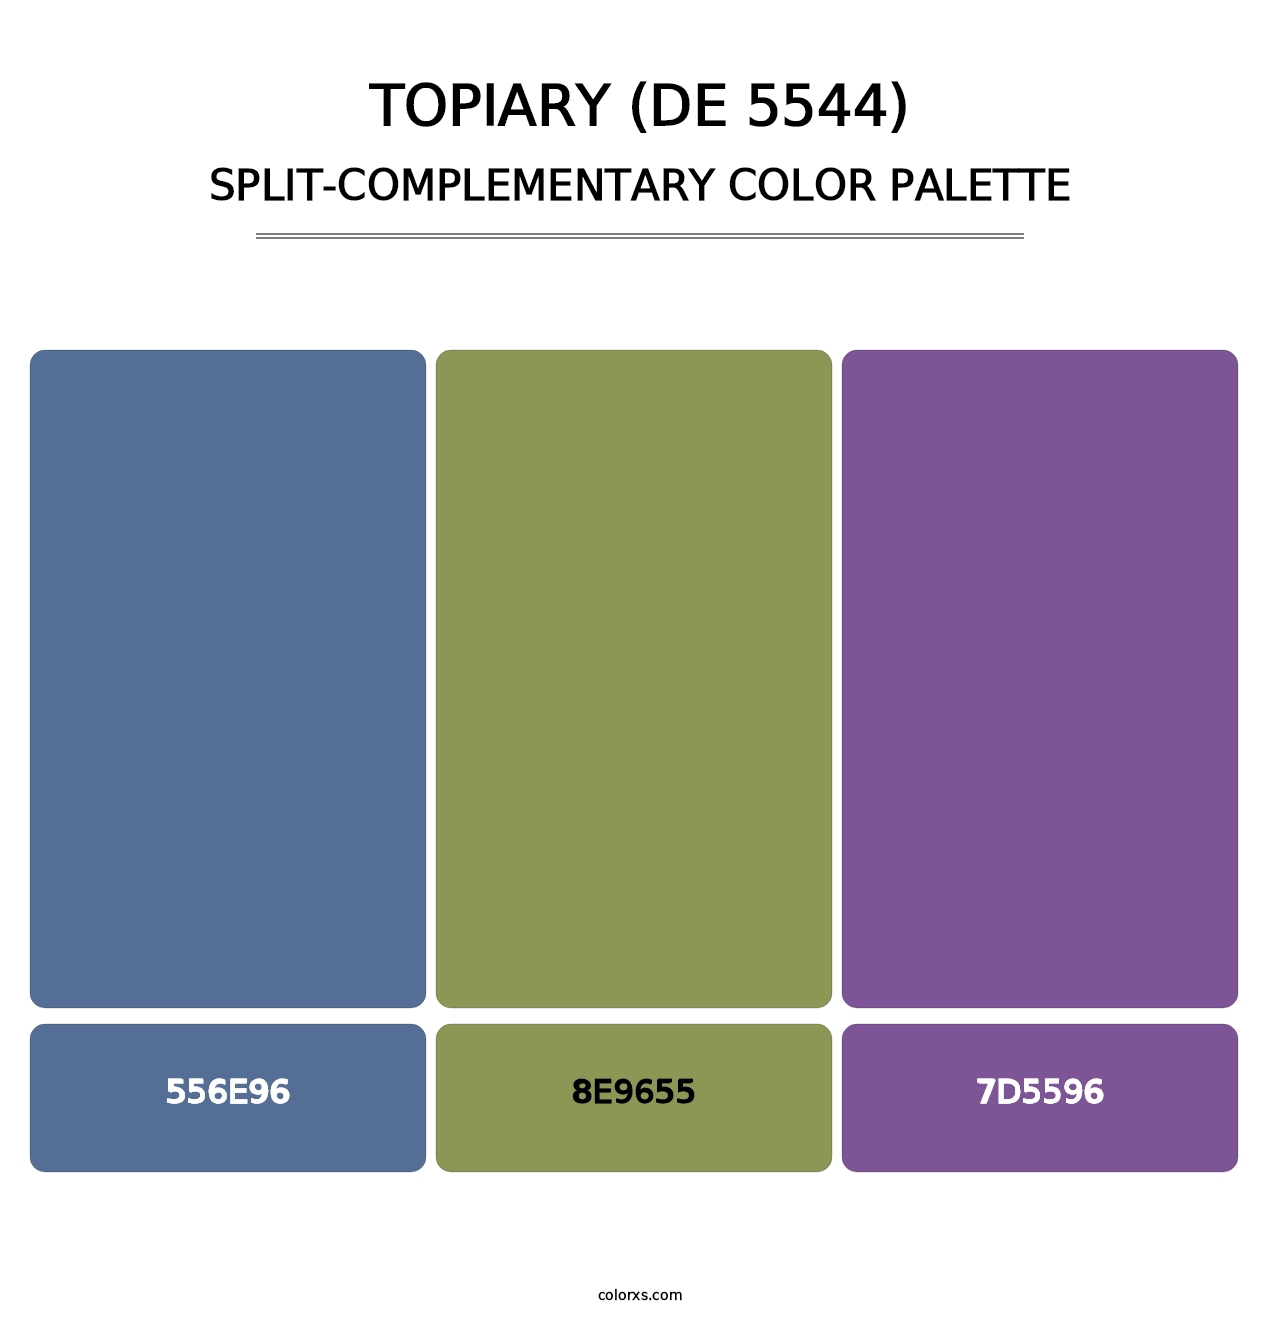 Topiary (DE 5544) - Split-Complementary Color Palette